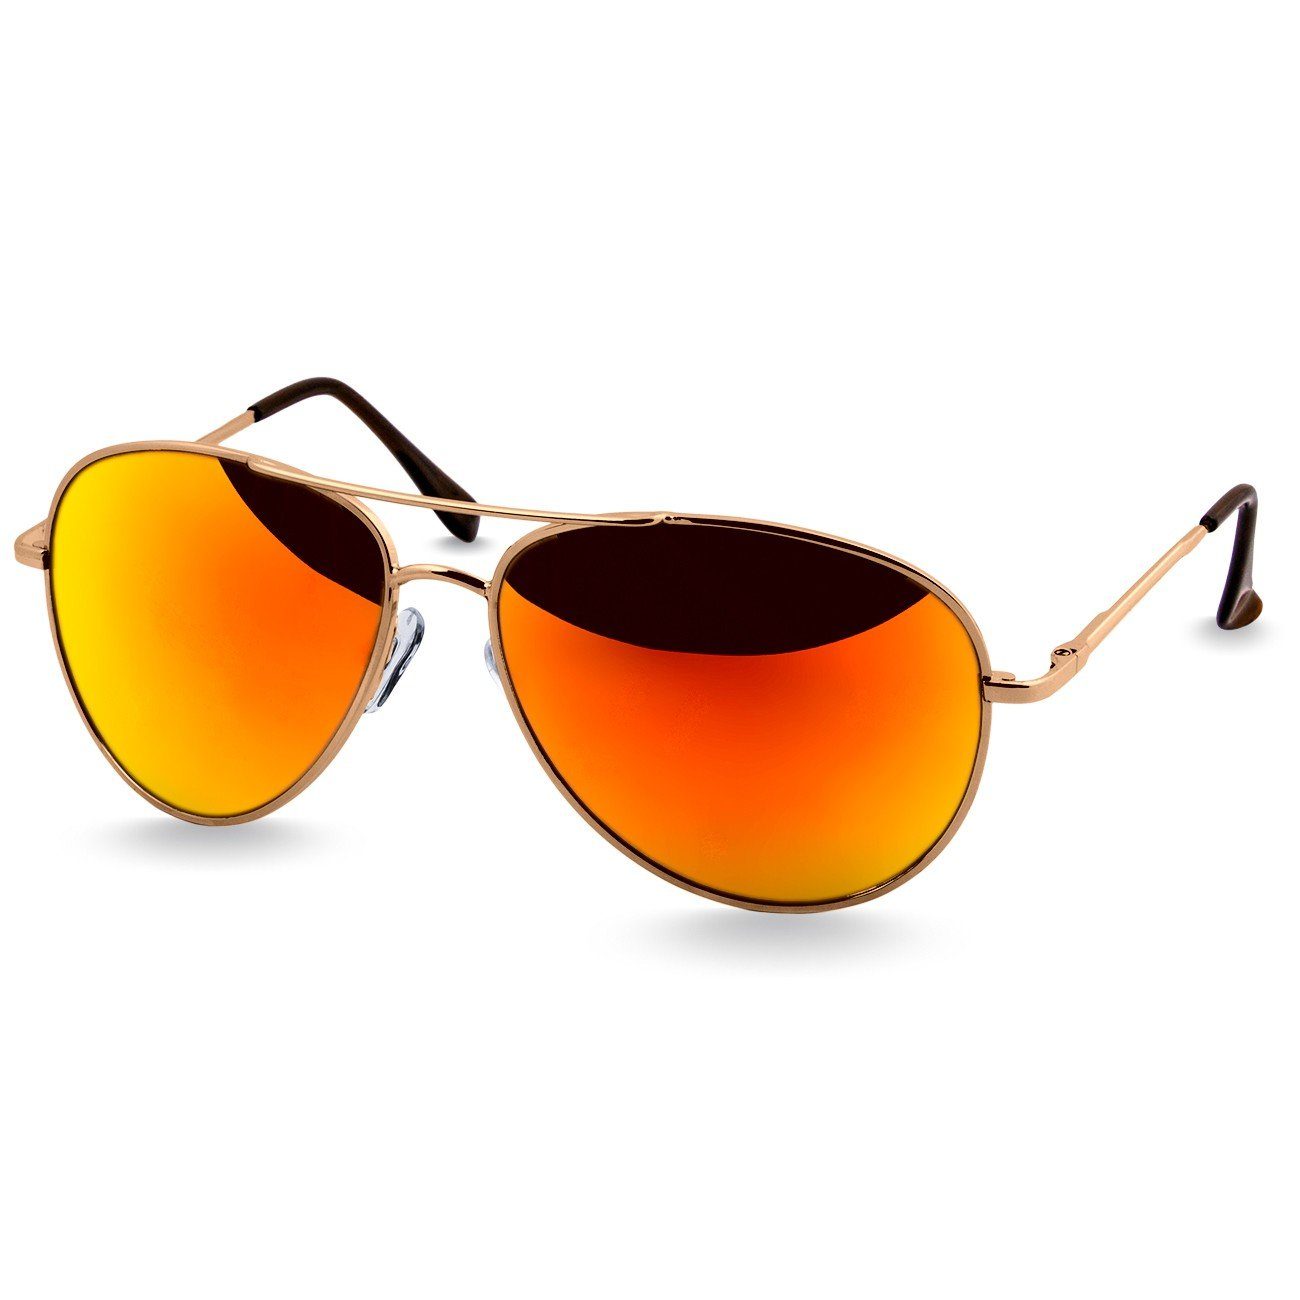 Caspar Sonnenbrille klassische Pilotenbrille / schwarz silber getönt Unisex SG013 Retro